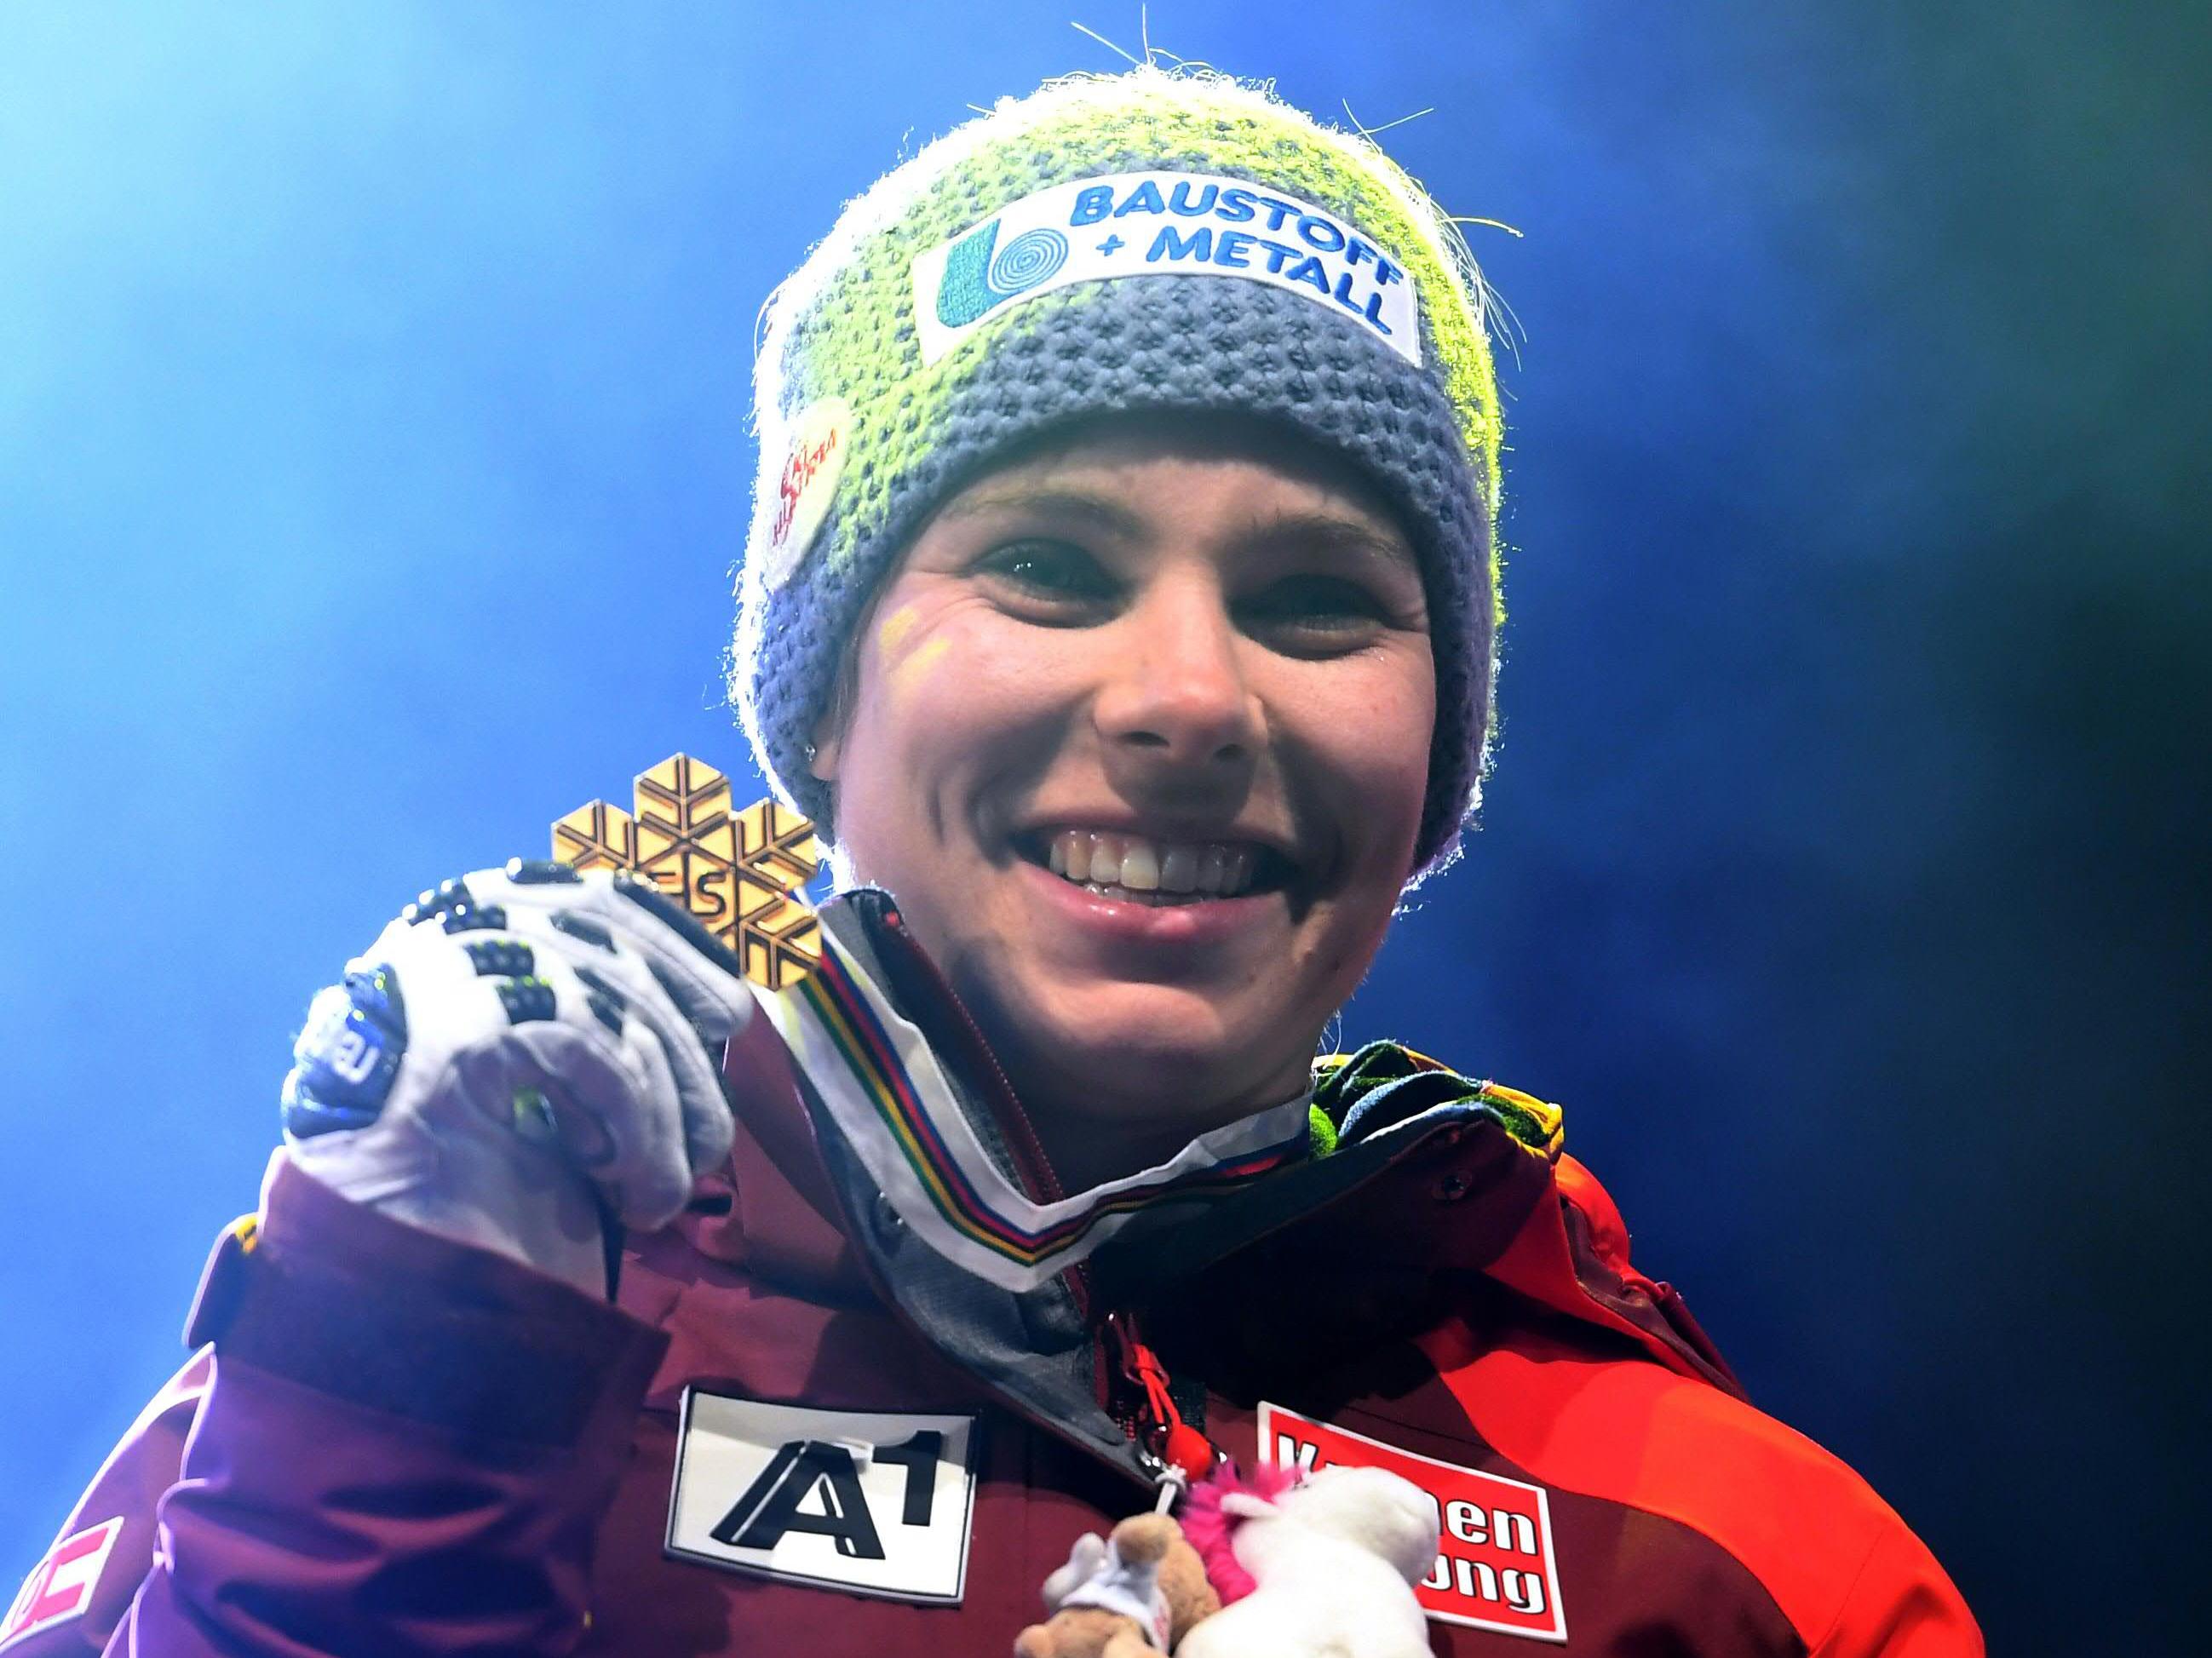 Nicole Schmidhofer freut sich über ihre erste Holdmedaille bei der Ski-WM.